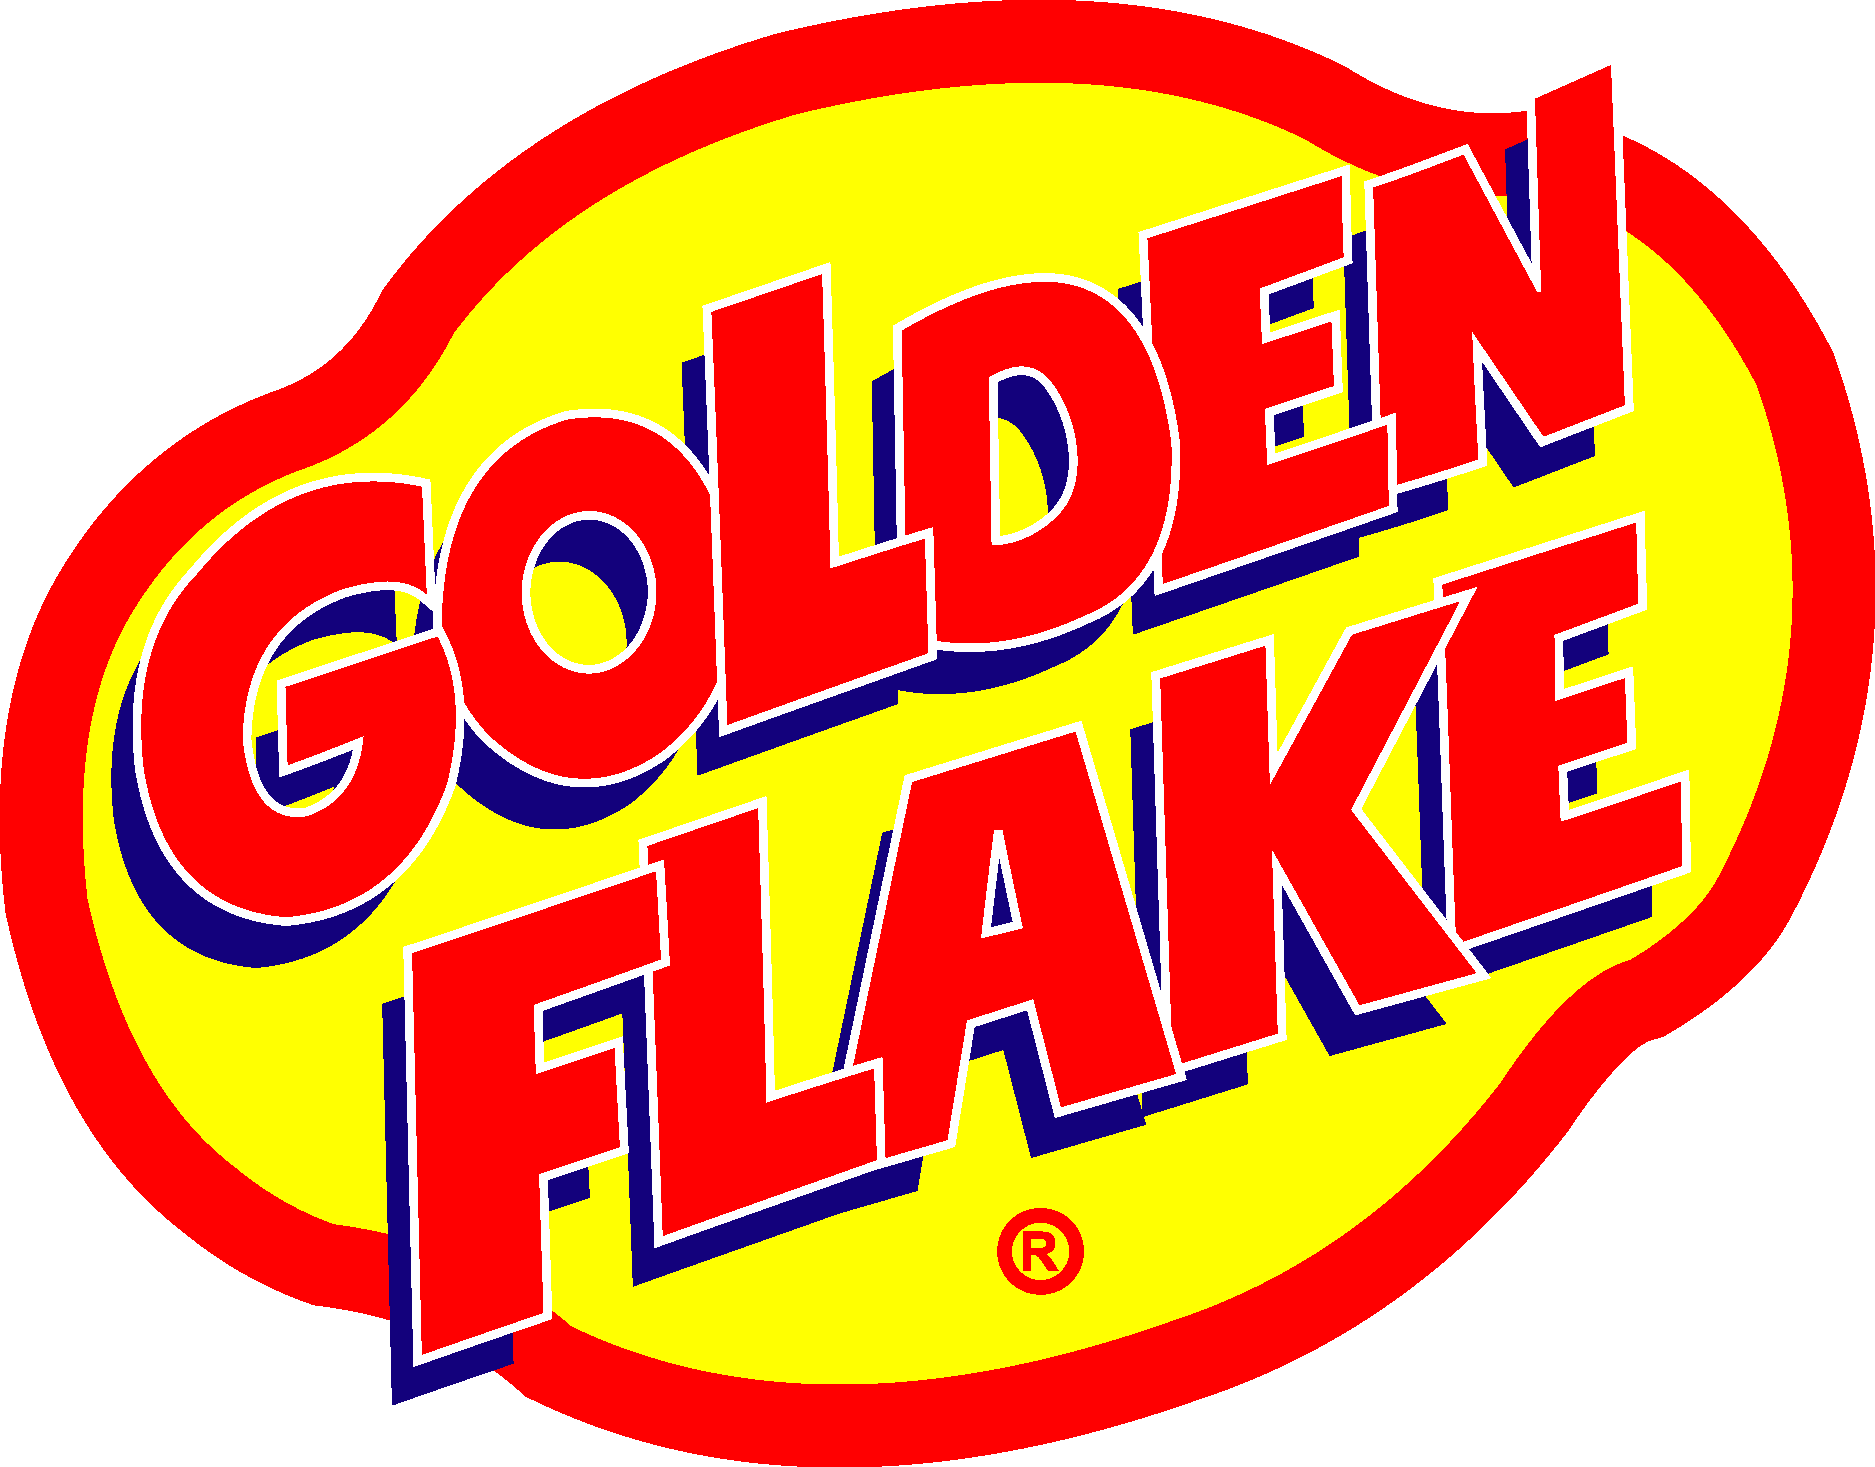 Golden Flake Logo Vector